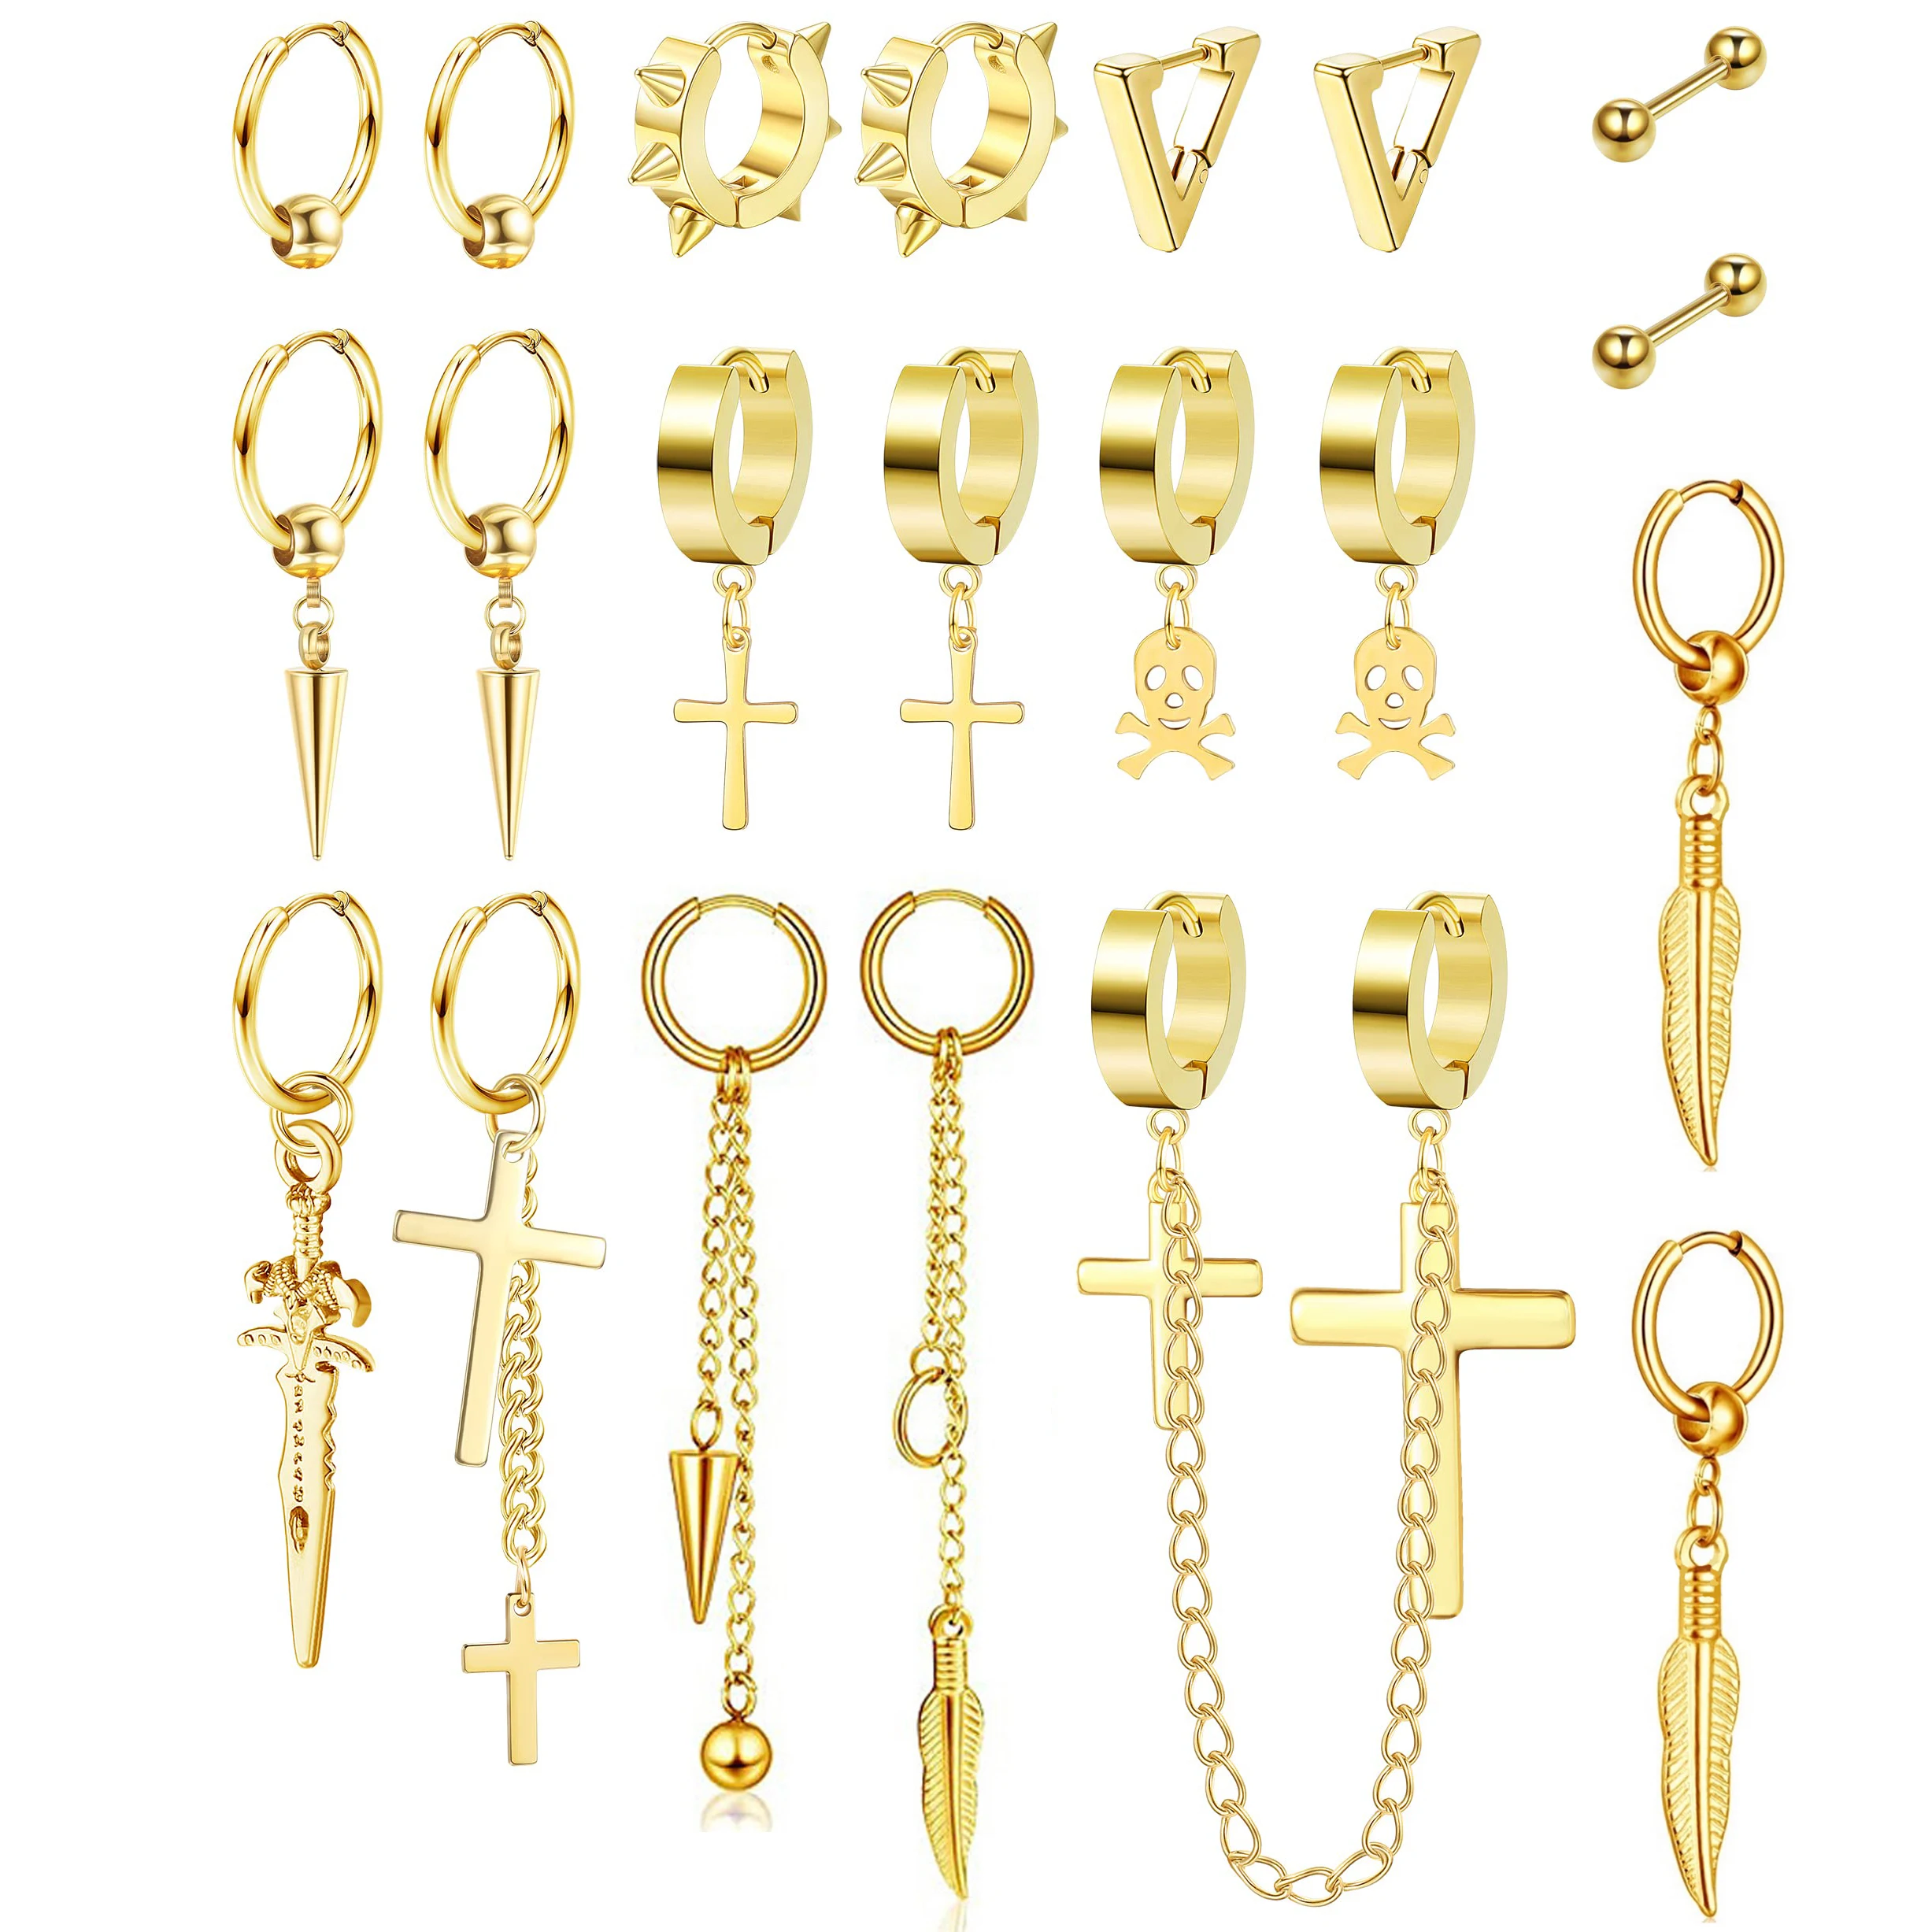 

Серьги-подвески для мужчин и женщин, ювелирные украшения для пирсинга под золото, из нержавеющей стали, Kpop, 21 штука